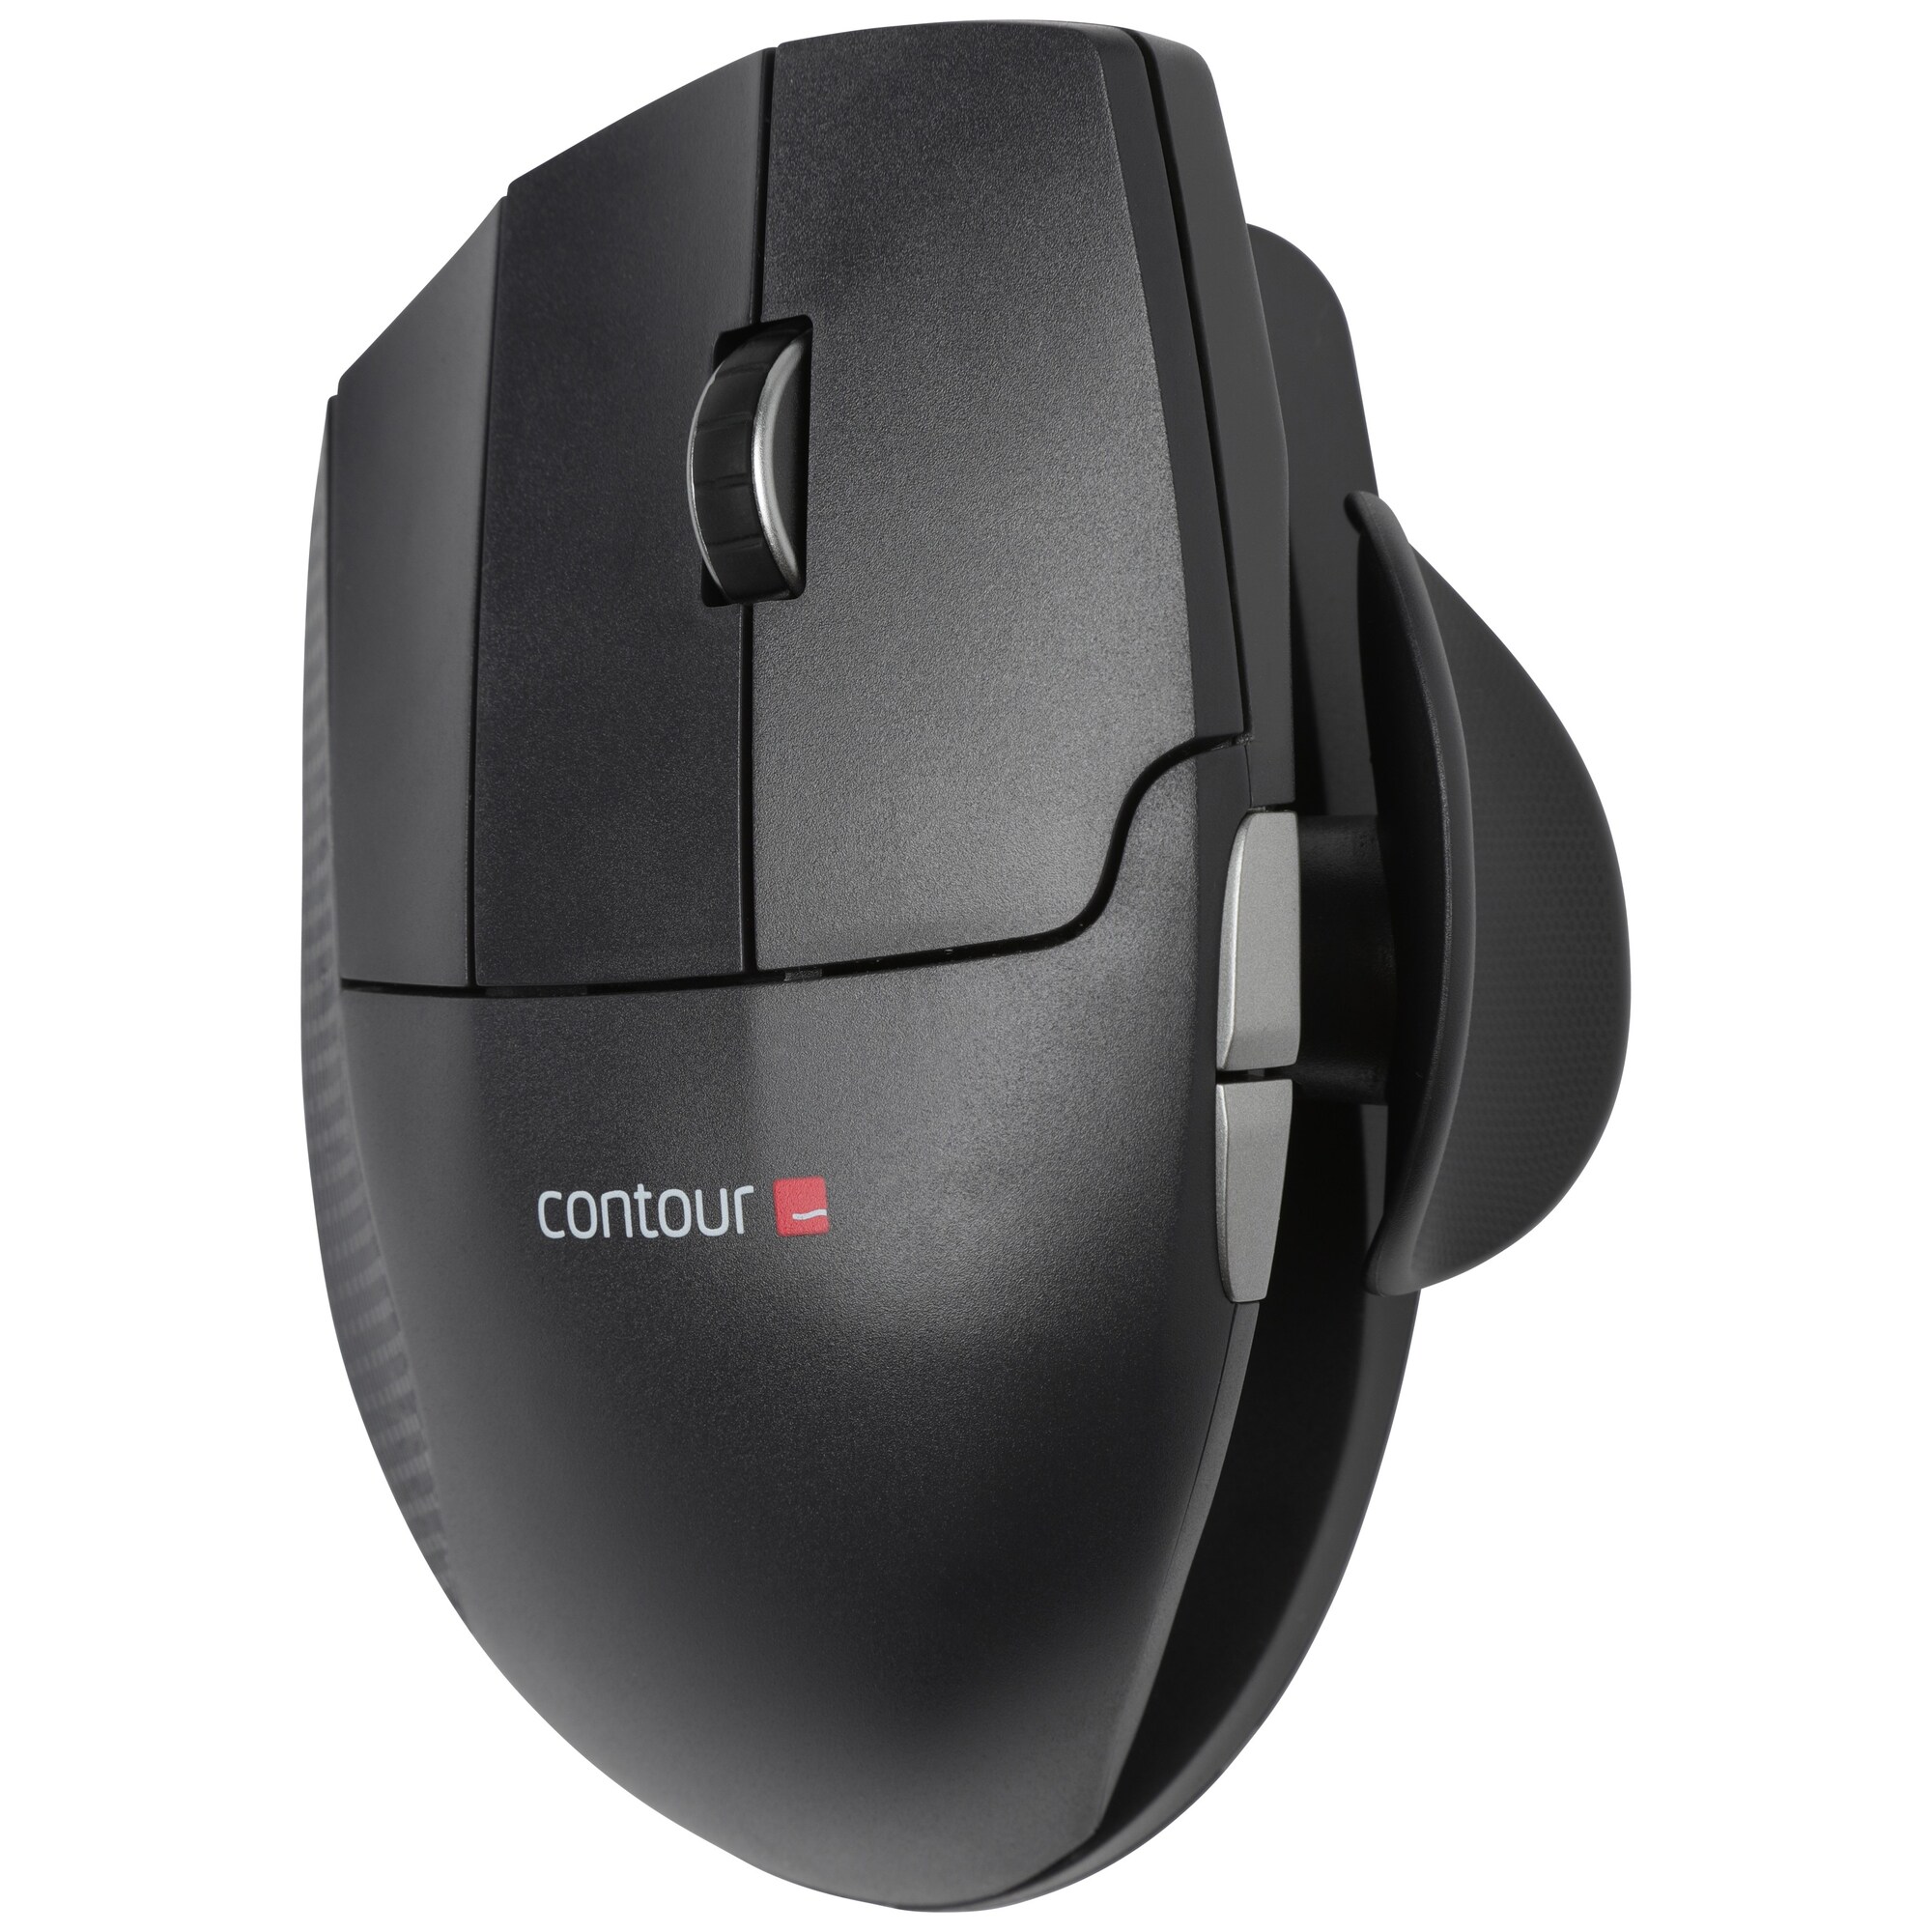 Contour Unimouse ergonomisk trådløst mus (venstreholdt) - PC-mus ...